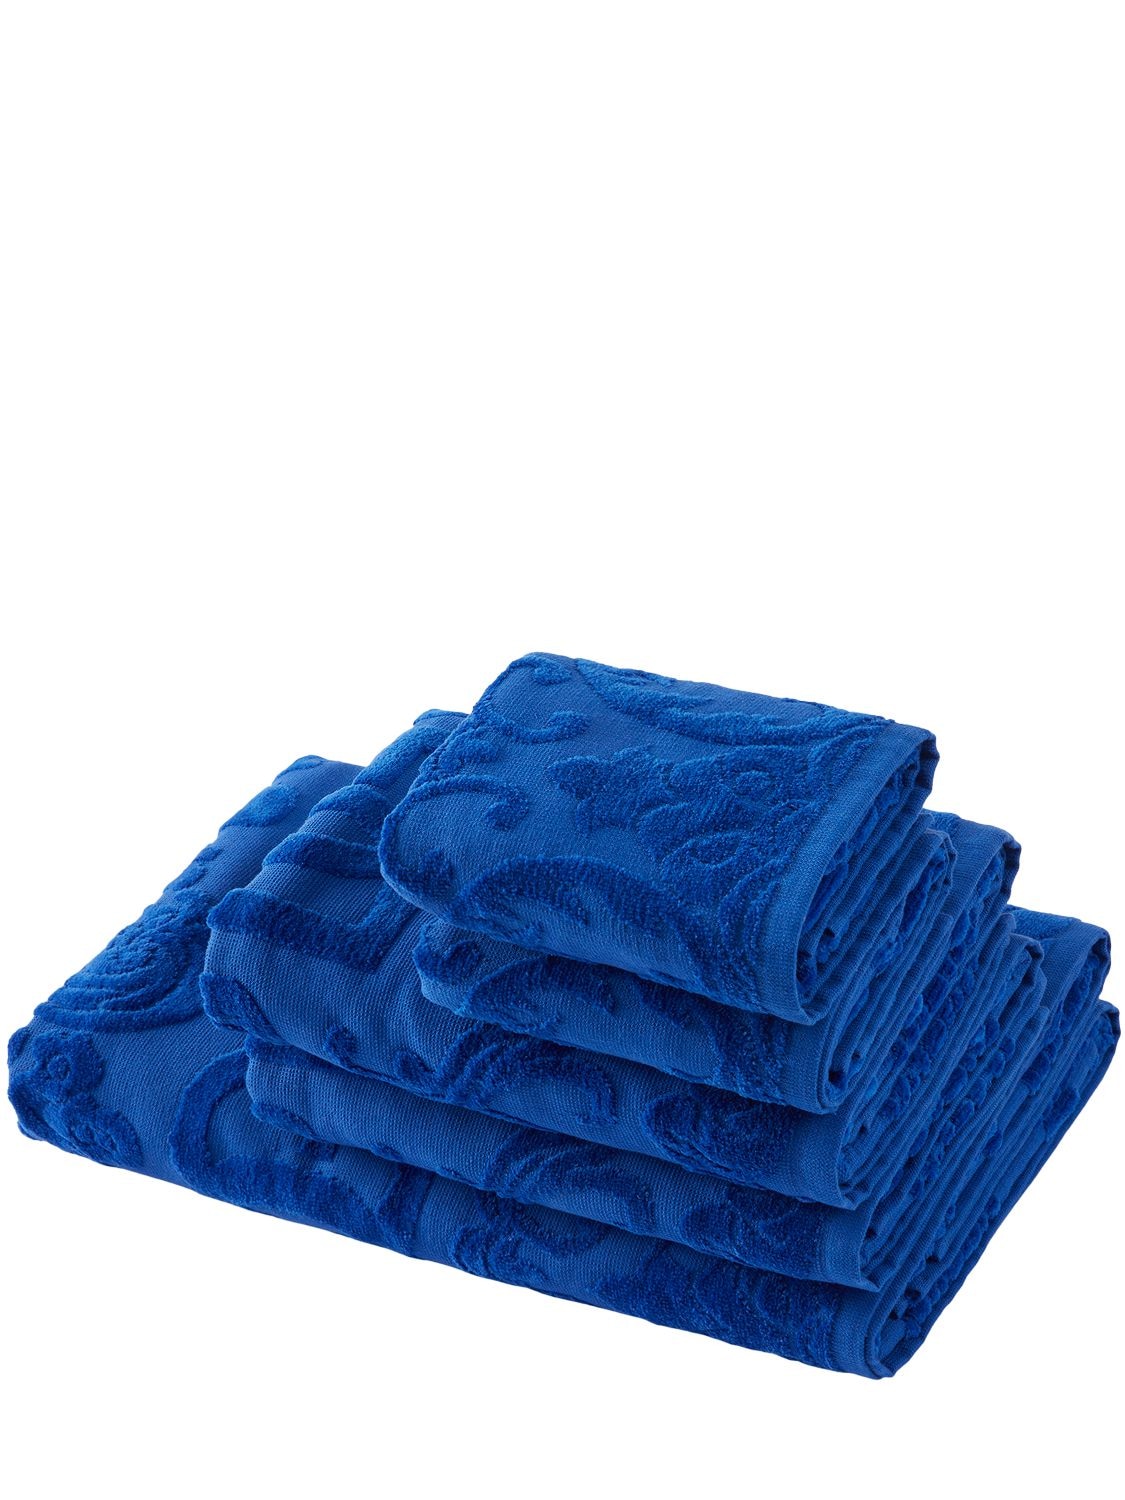 Set Of 5 Towels